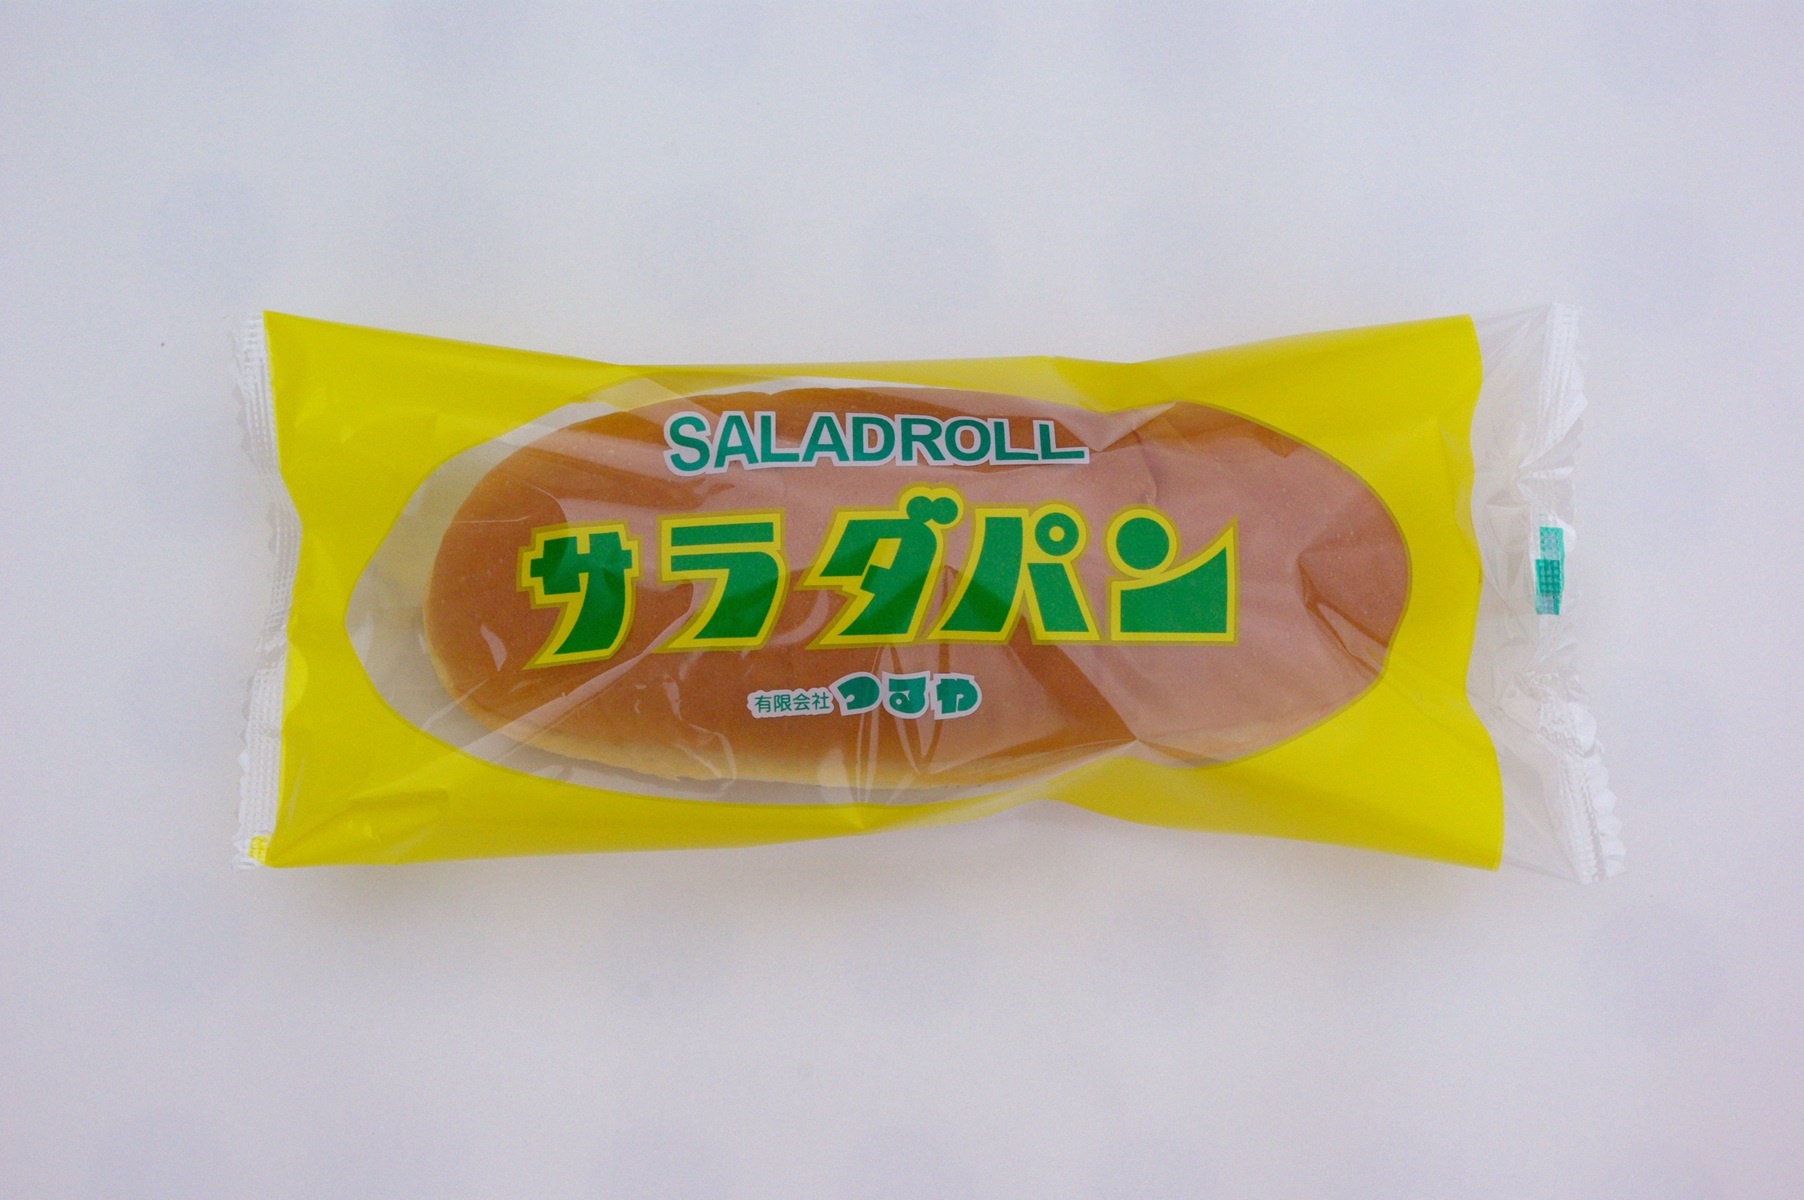 知る人ぞ知る、滋賀県のご当地パン「サラダパン」。コアなファンが多いイメージだ